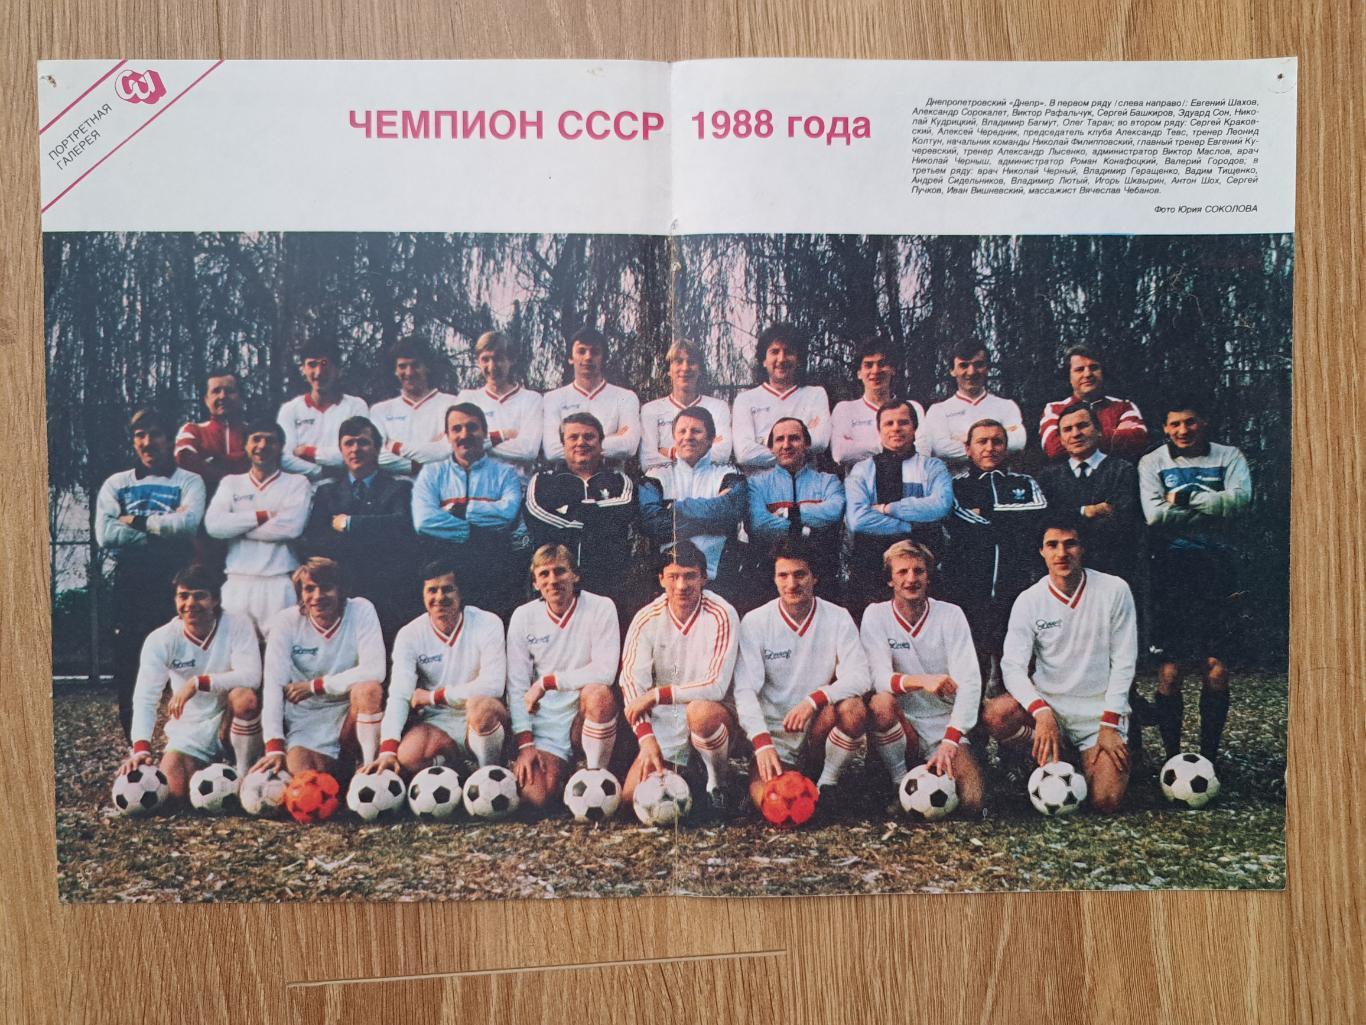 Днепр Днепропетровск- чемпион СССР 1988 года постер плакат